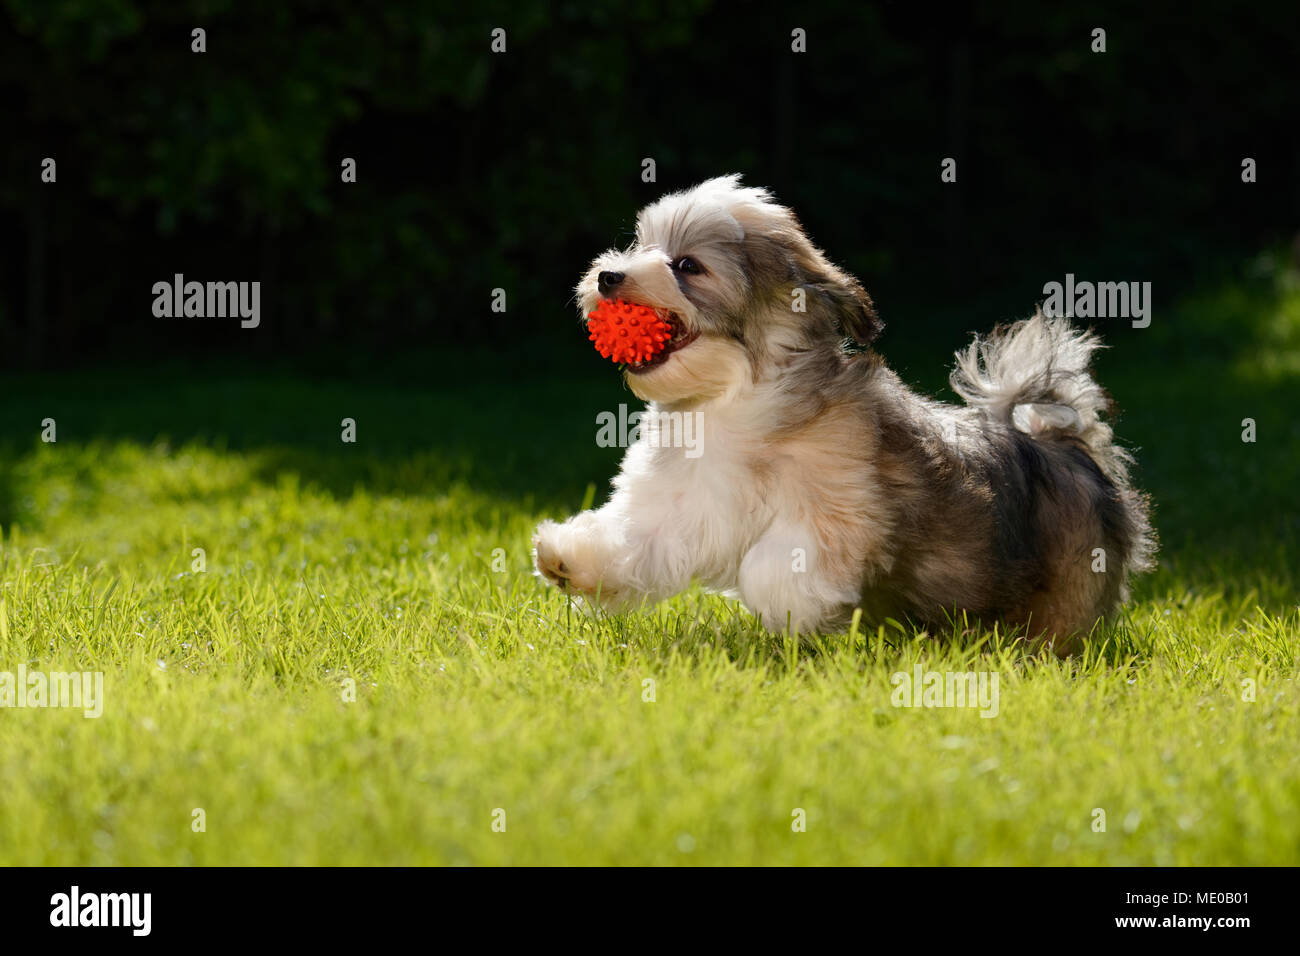 Verspielter kleiner Havaneser Welpe Hund läuft mit einem roten Ball in seinen Mund im Gras Stockfoto